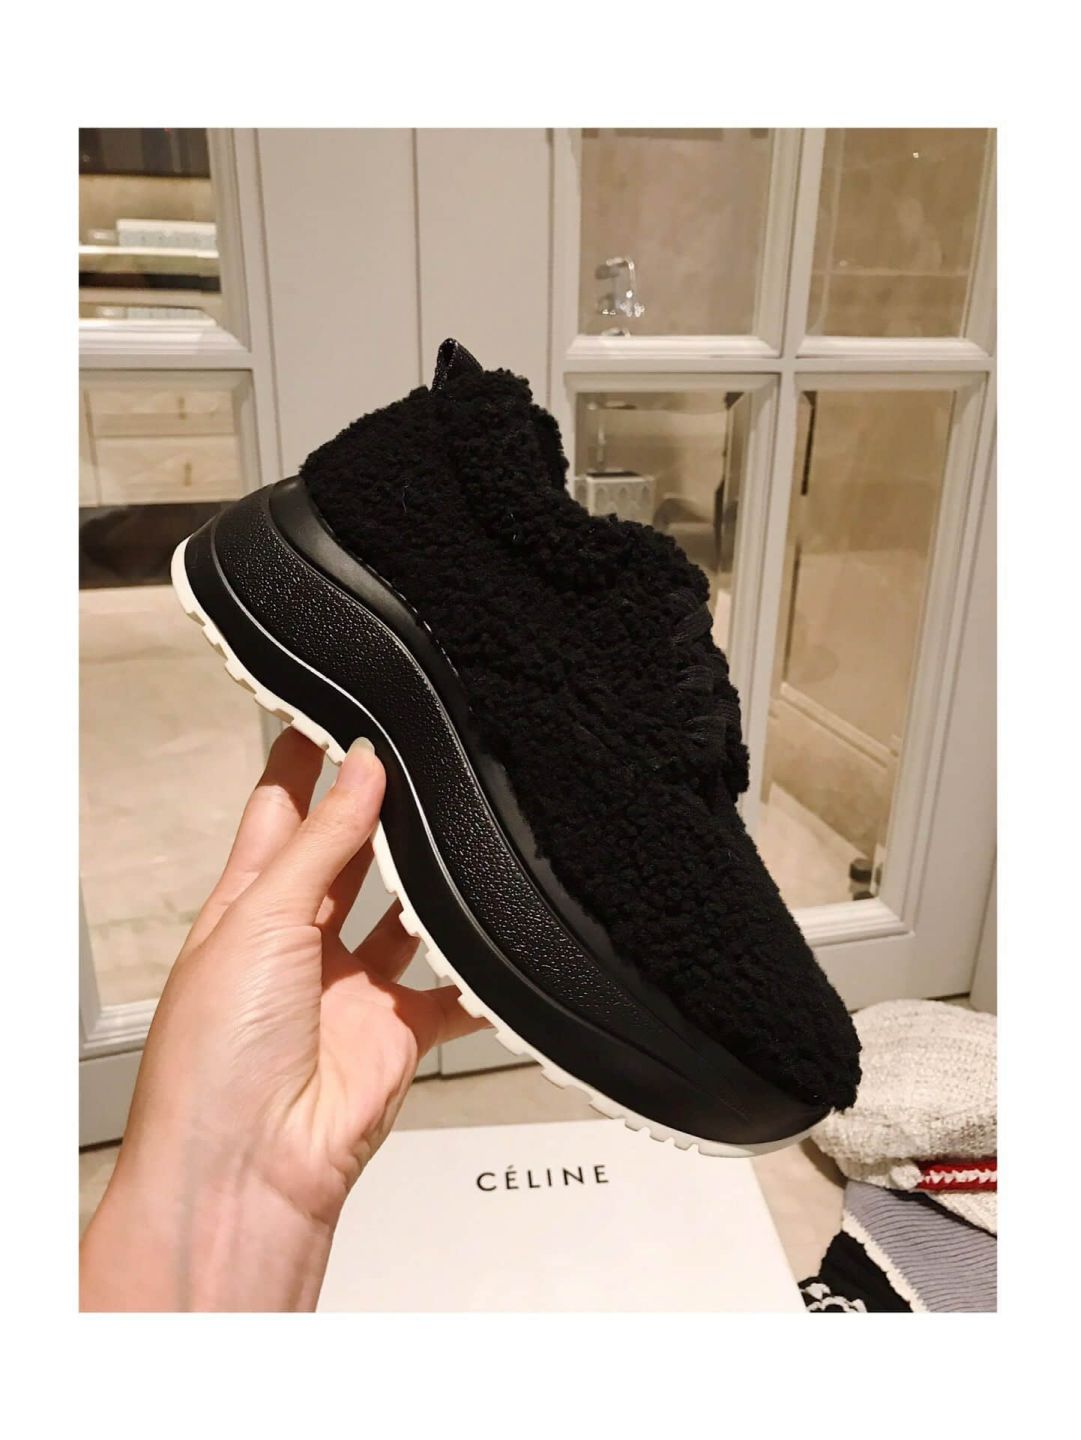 CELINE 2018 Platforms Women Shoes